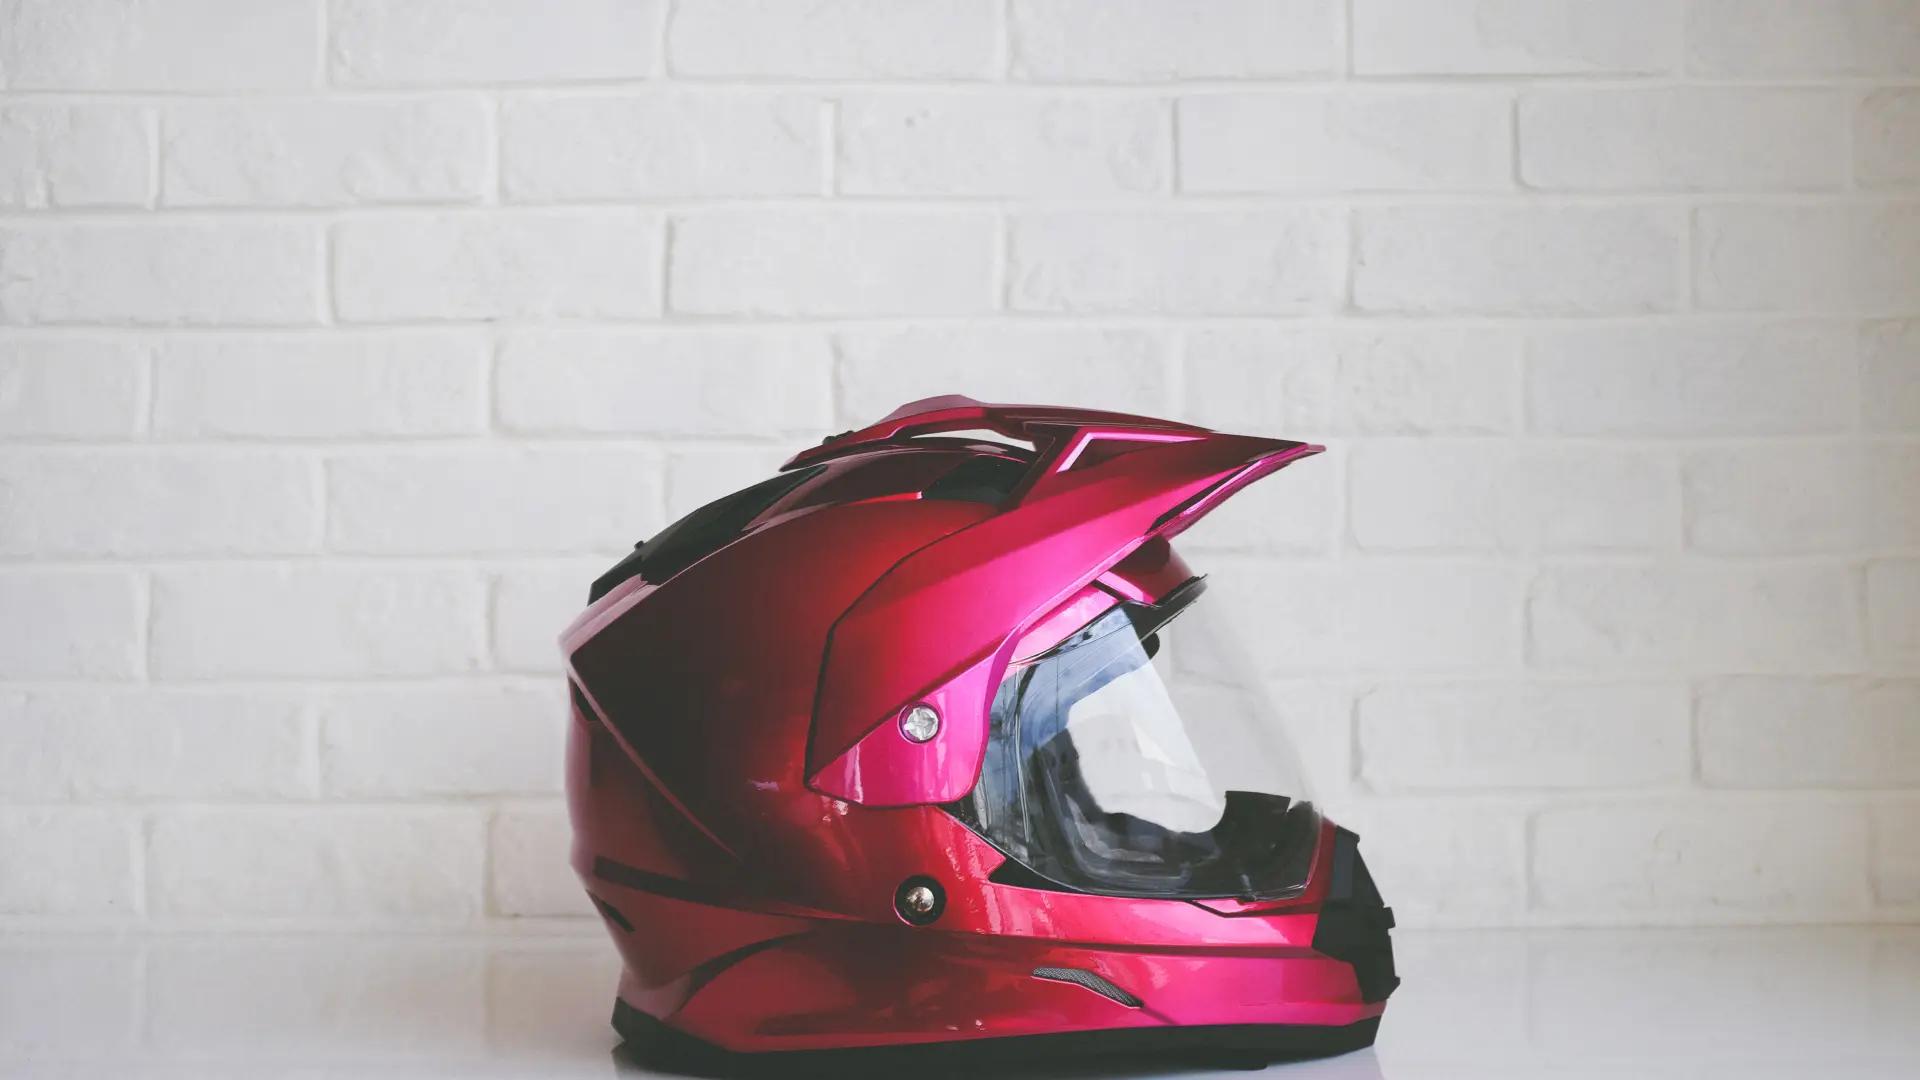 caducidad casco moto dgt - Cómo se lee la fecha de vencimiento de un casco de seguridad